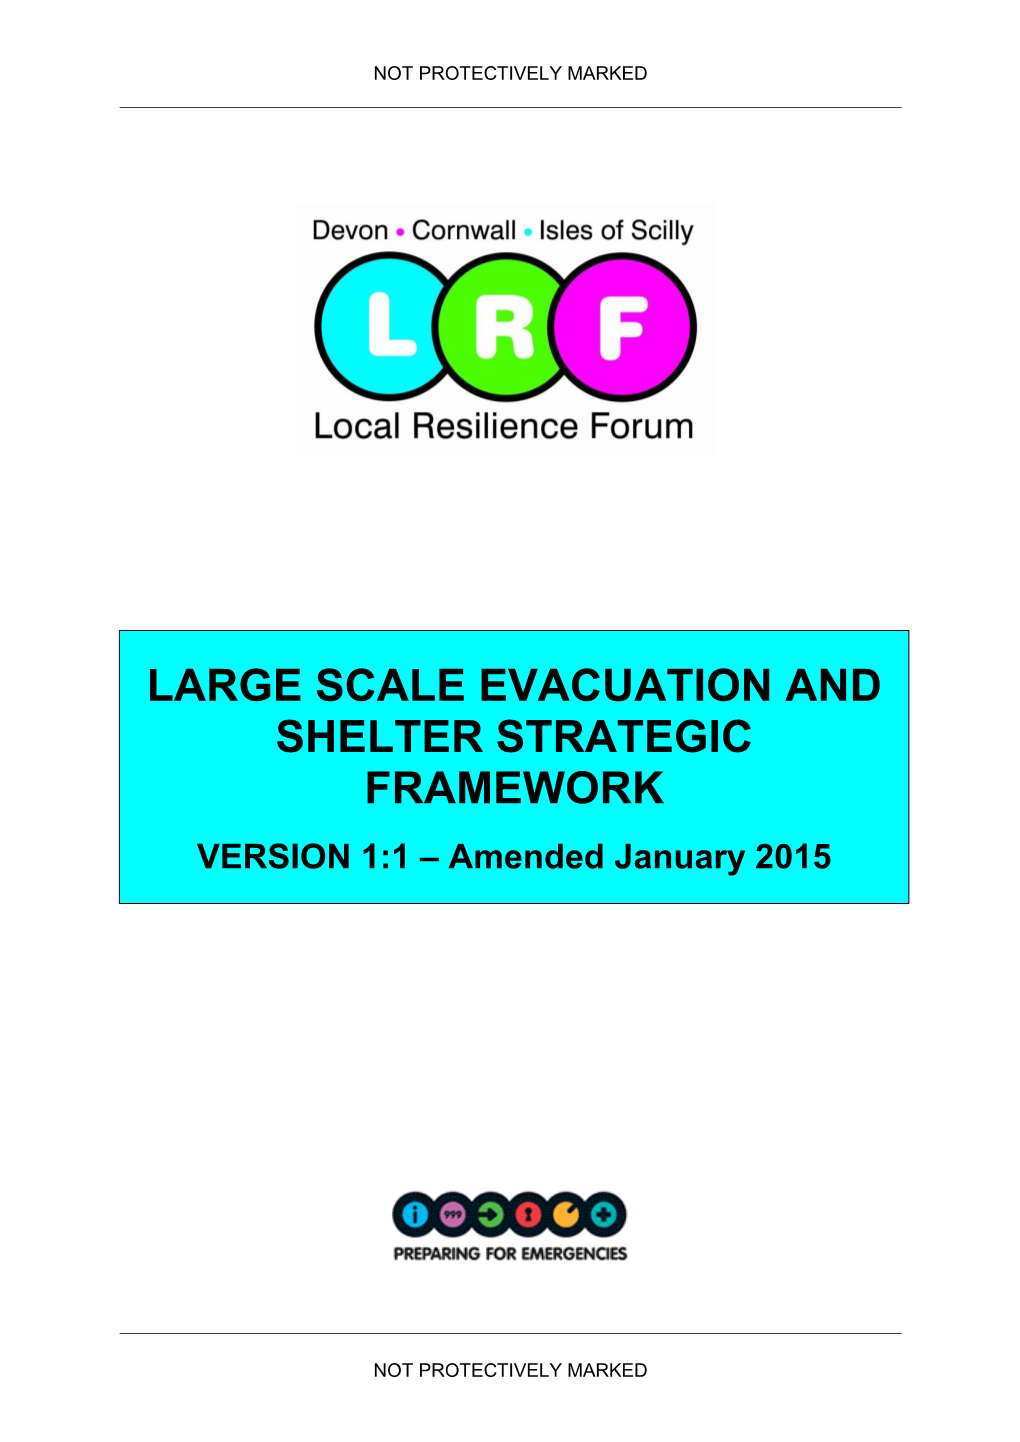 Large Scale Evacuation & Shelter Strategic Framework